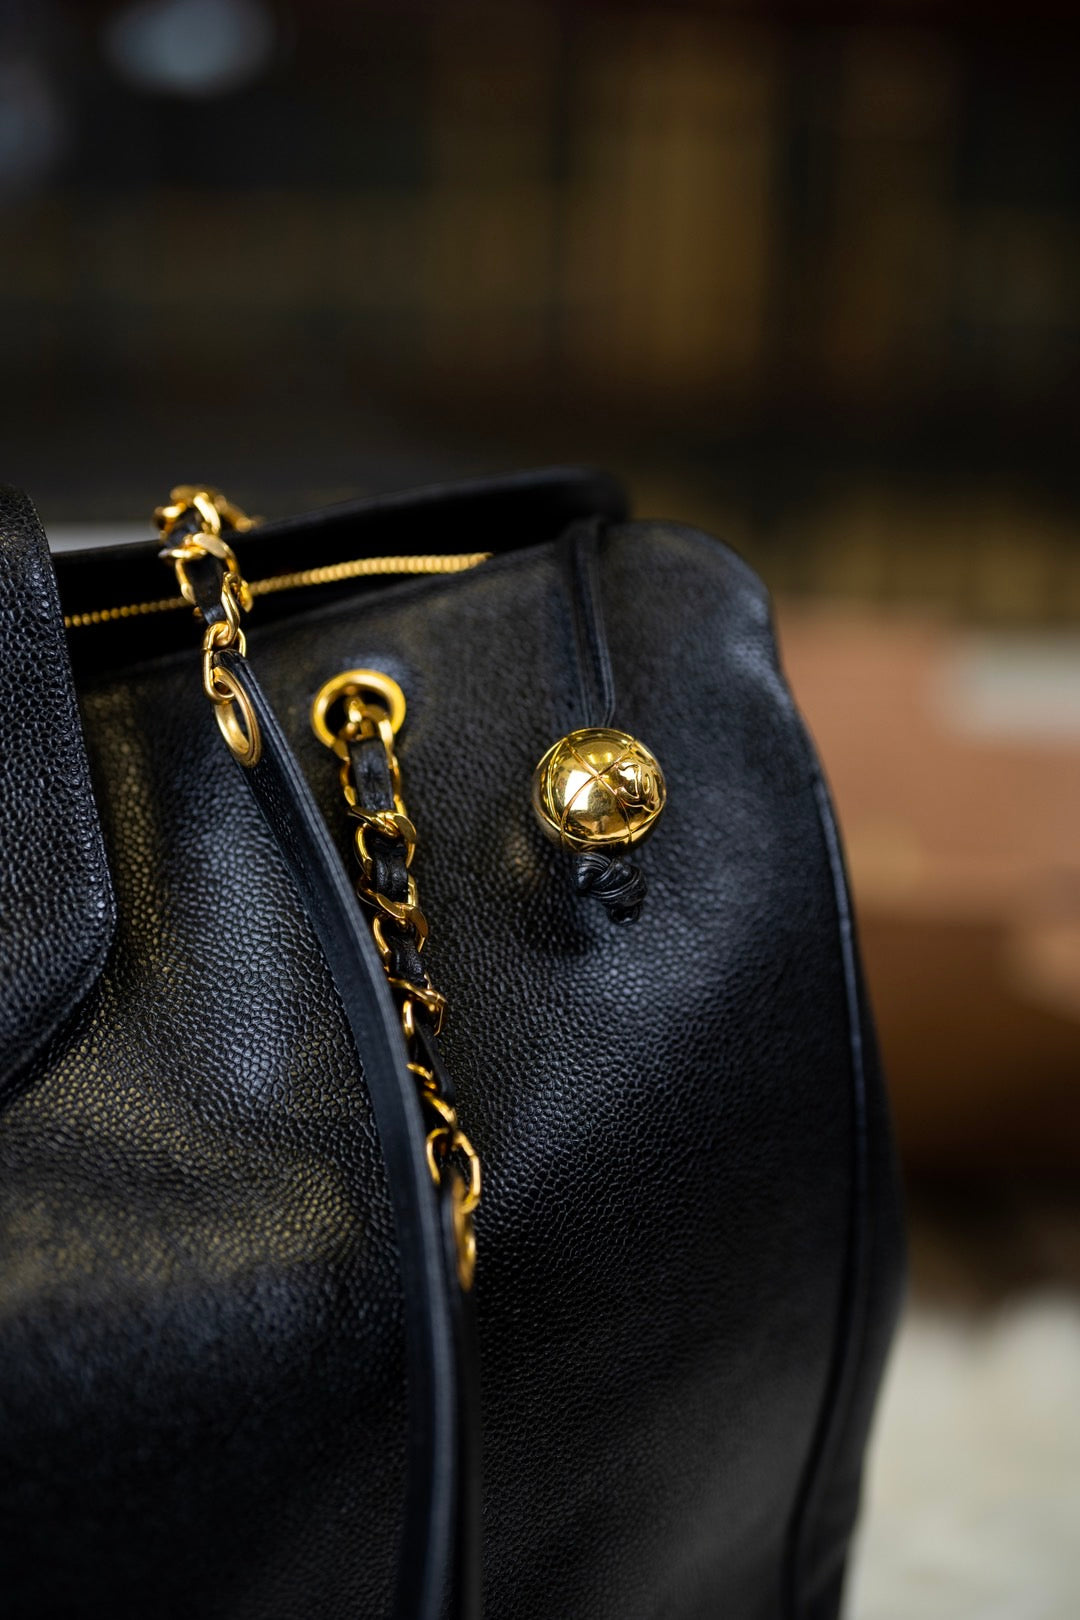 Pre-loved Chanel Vintage Black Caviar Leather Gold Supermodel Carryall Travel Weekender Shoulder Tote Bag